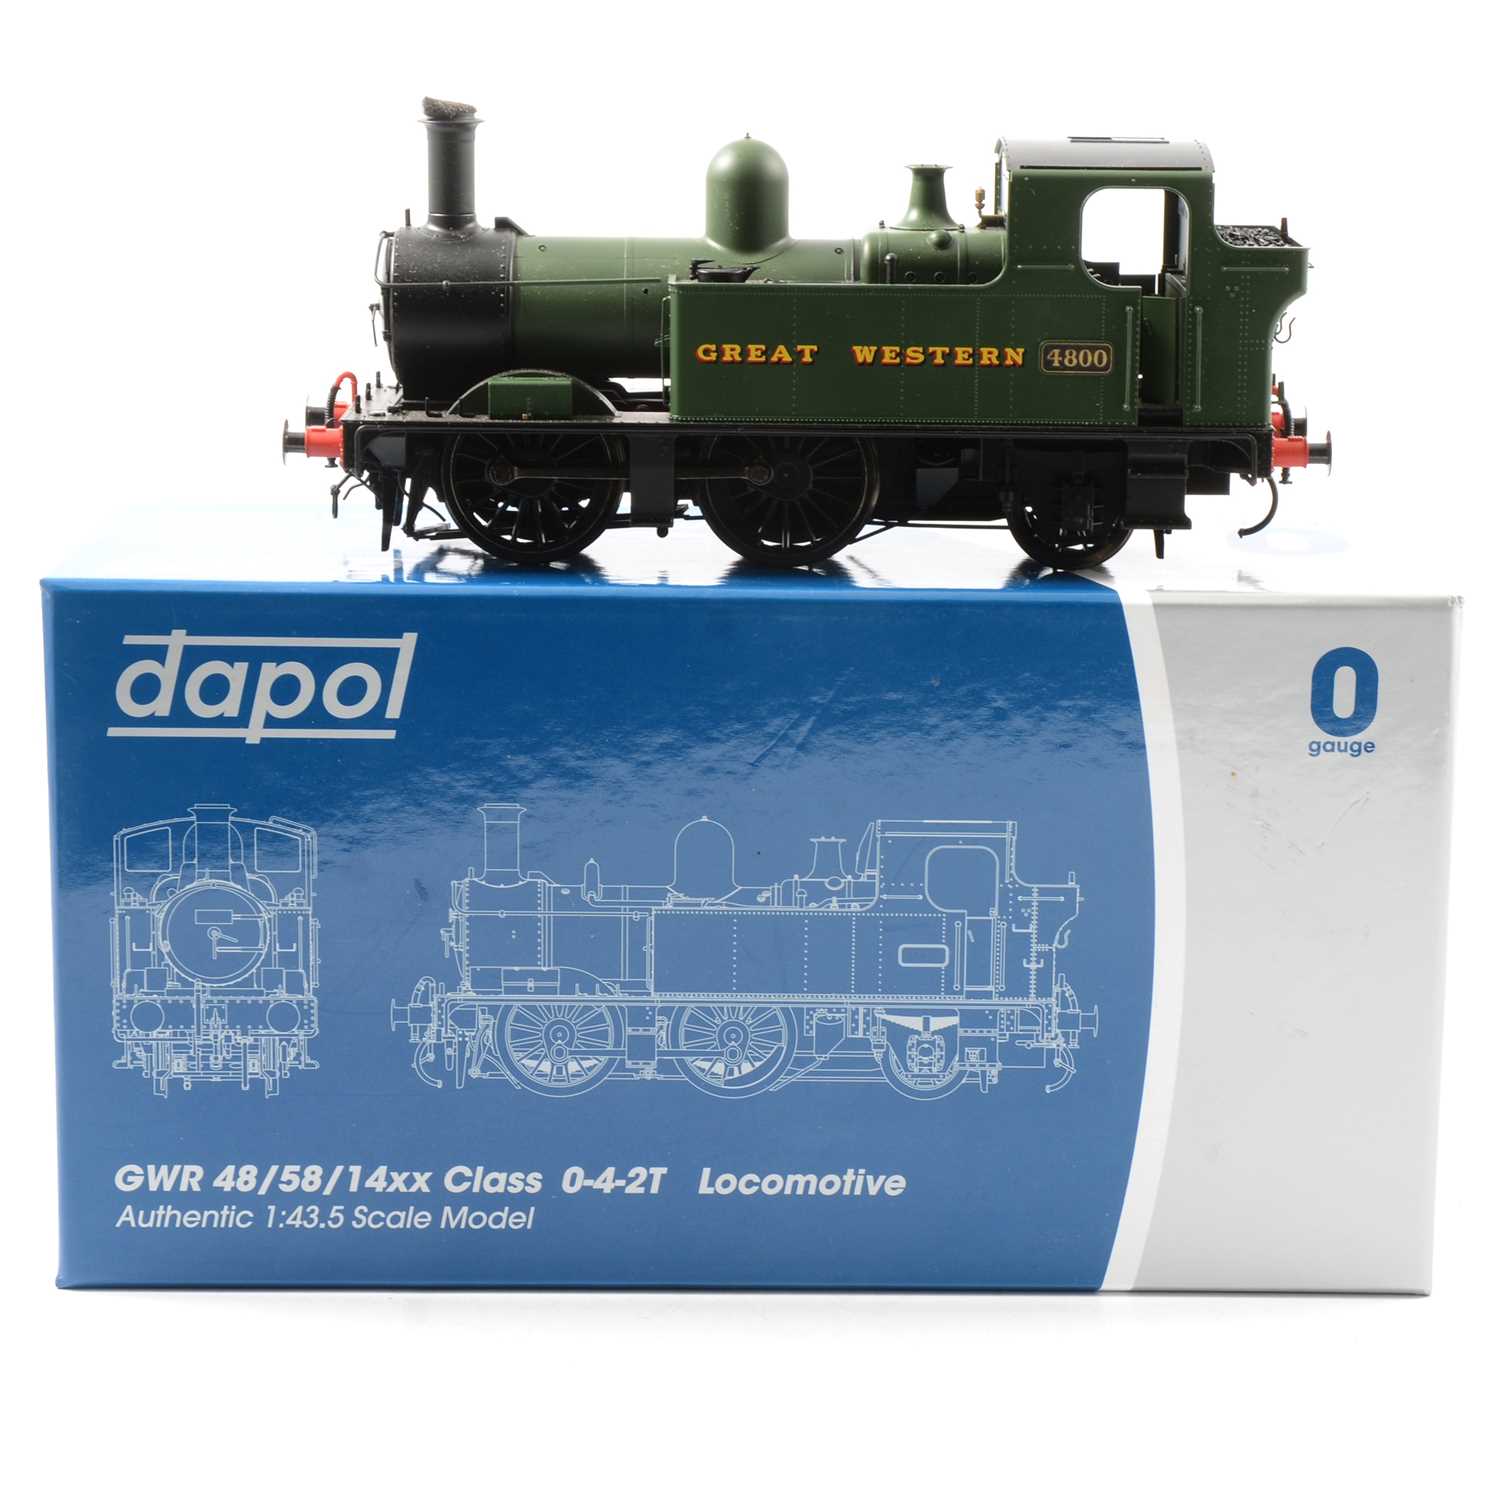 Lot 5 - Dapol O gauge model railway locomotive ref 7S-006-001 48xx class GWR Great Western